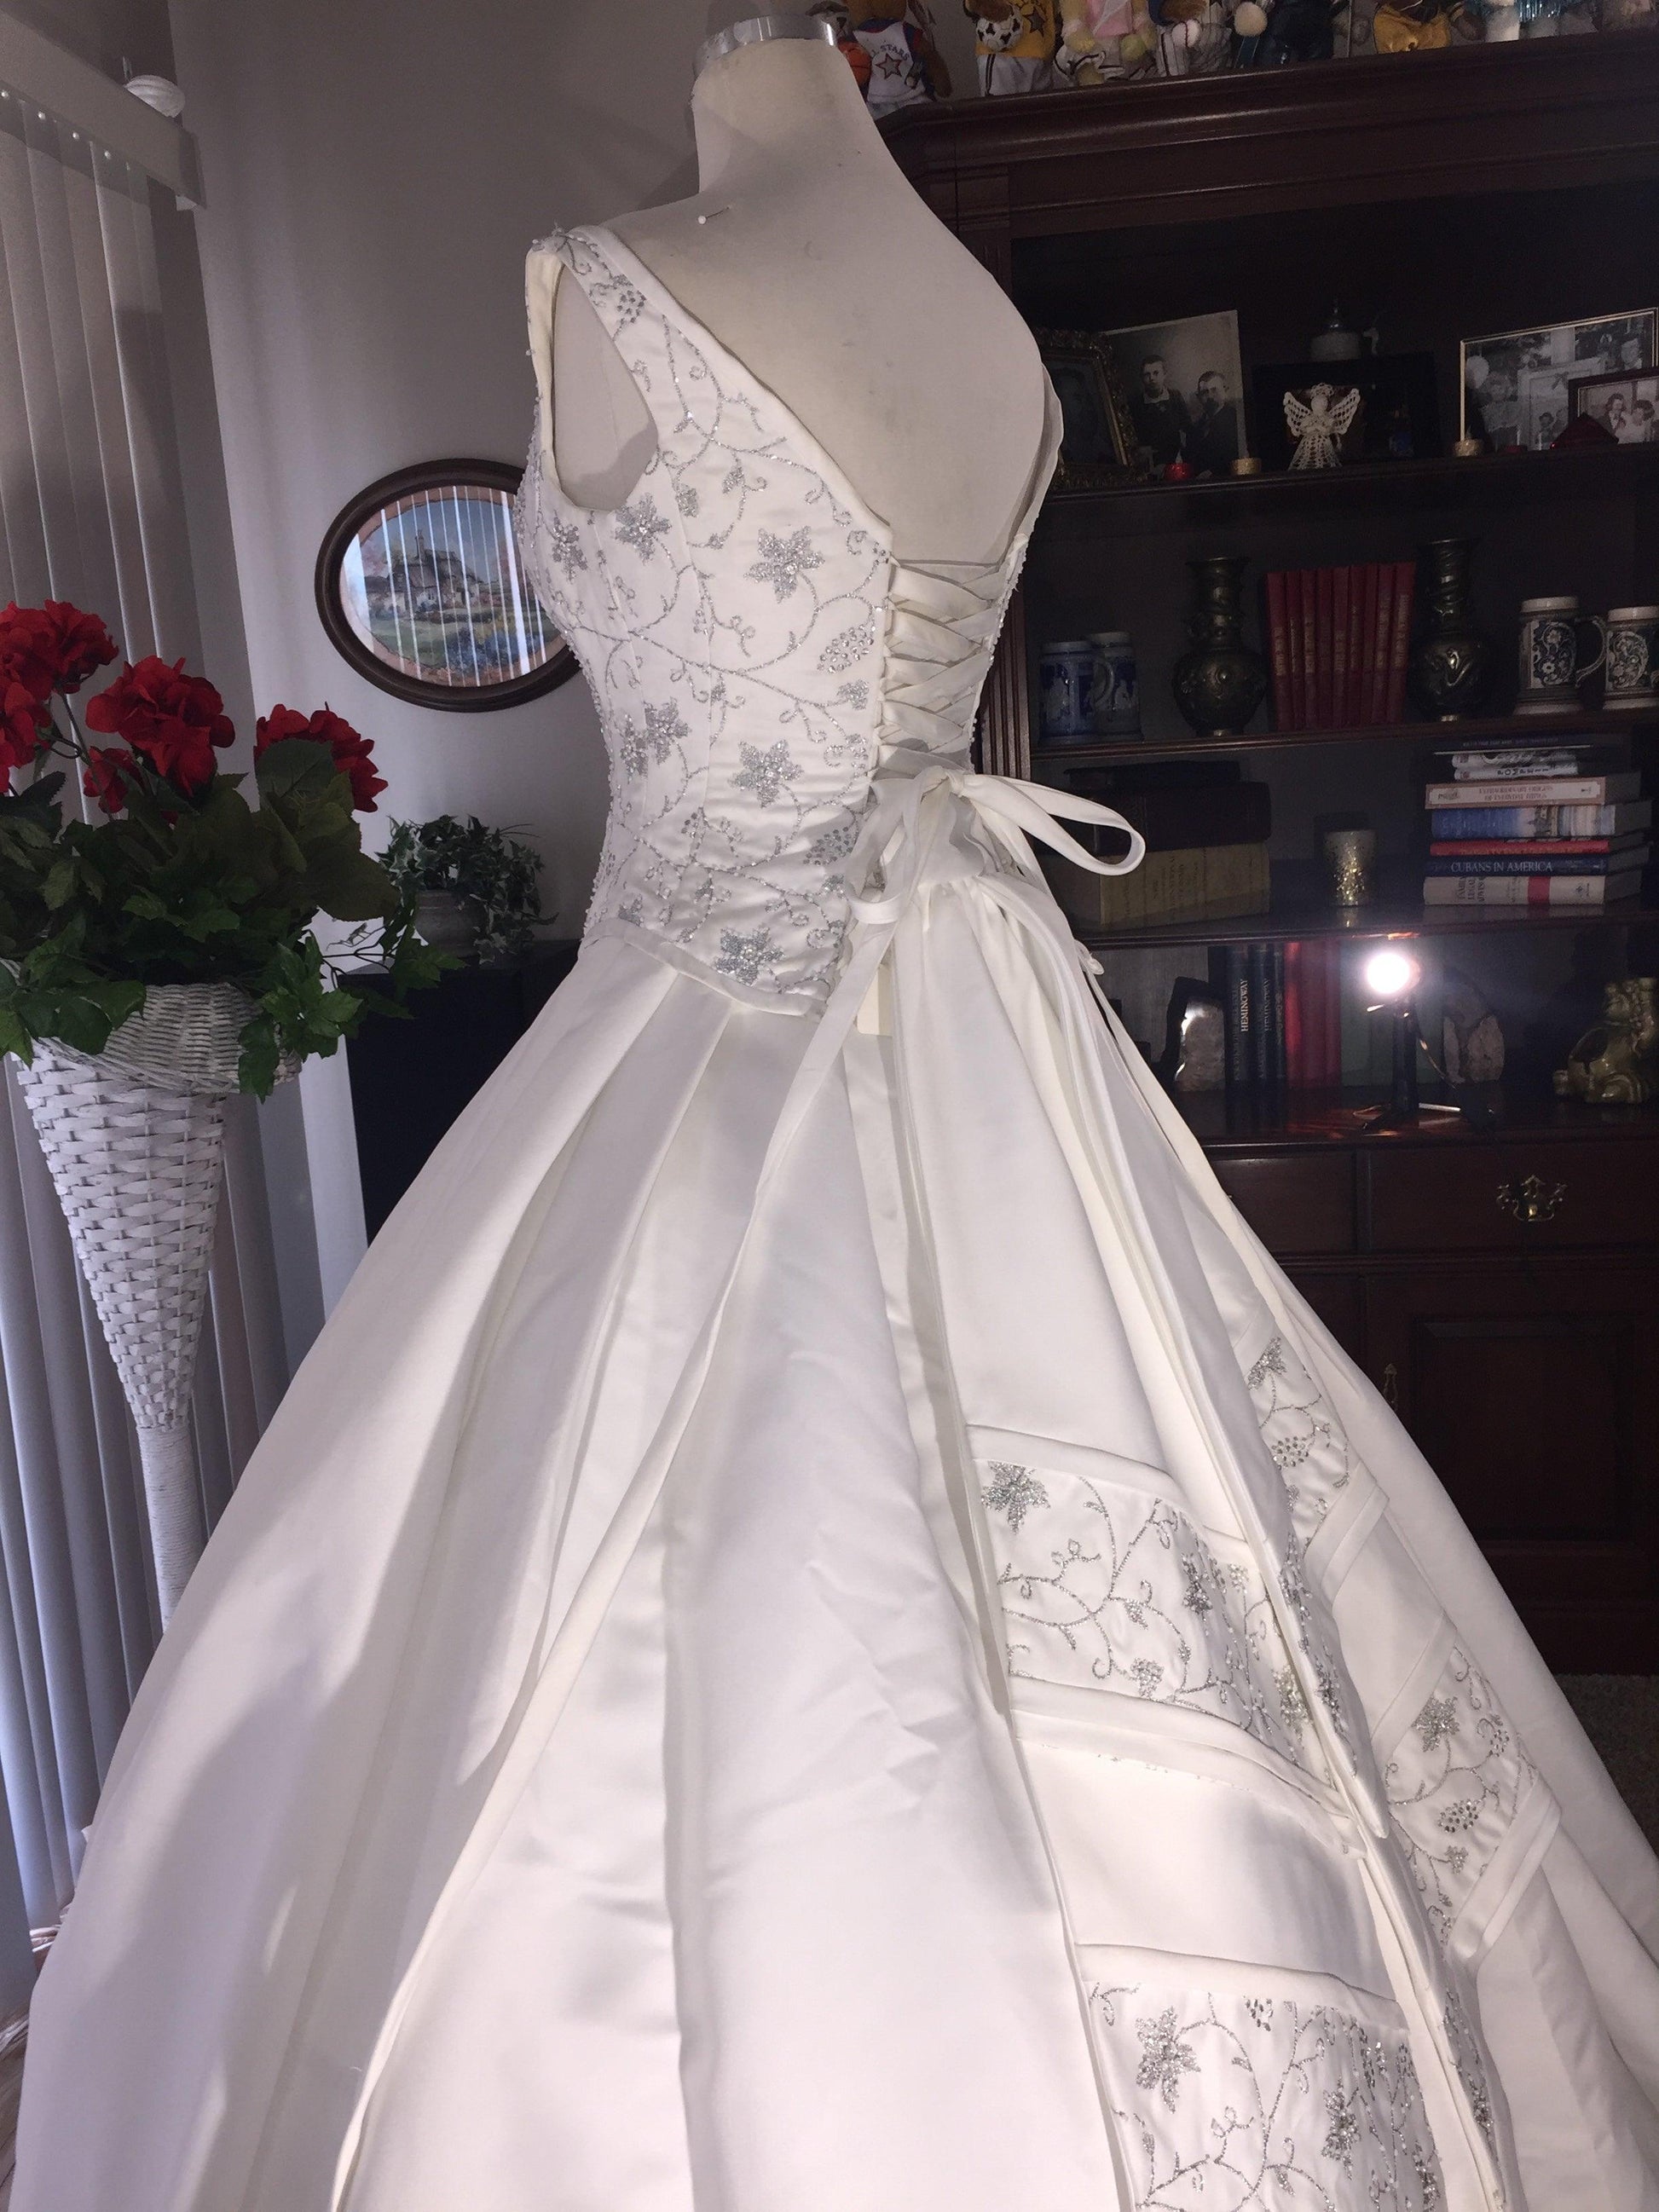 Elizabeth Chevron One of a Kind Wedding Gown - A Walk Thru Time Vintage